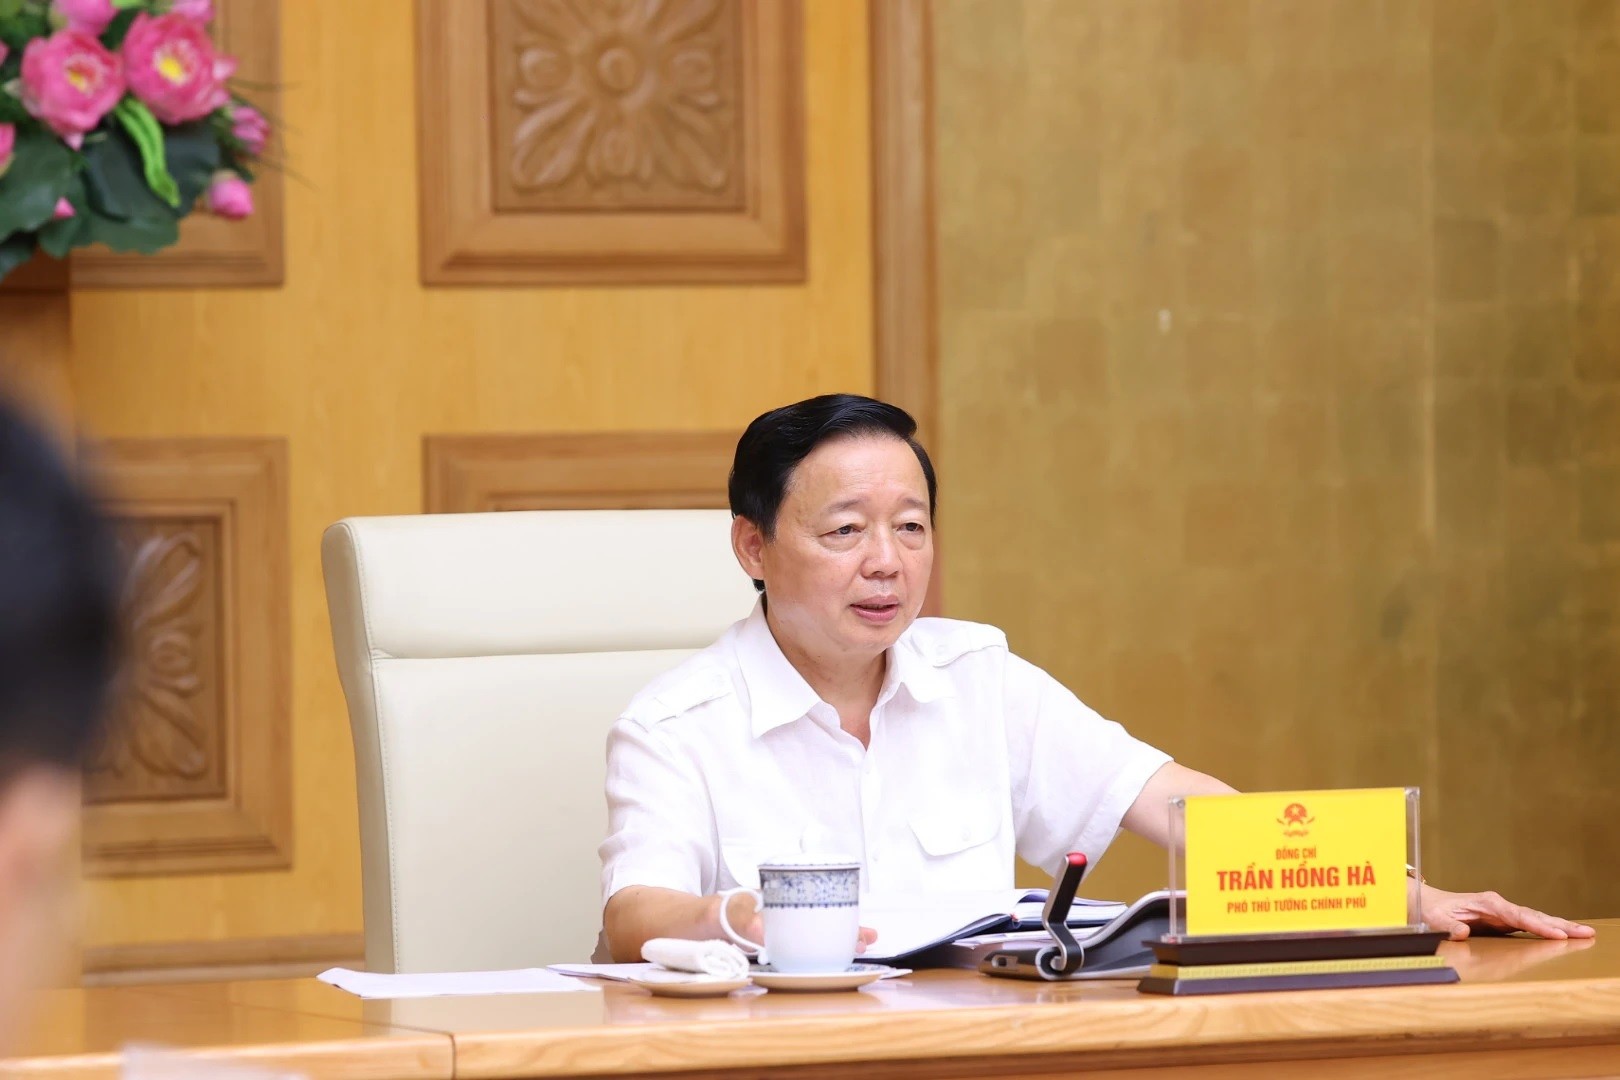 
Phó Thủ tướng Trần Hồng Hà yêu cầu loại hình nhà ở riêng lẻ kết hợp cho thuê phải áp dụng quy chuẩn an toàn như nhà chung cư
